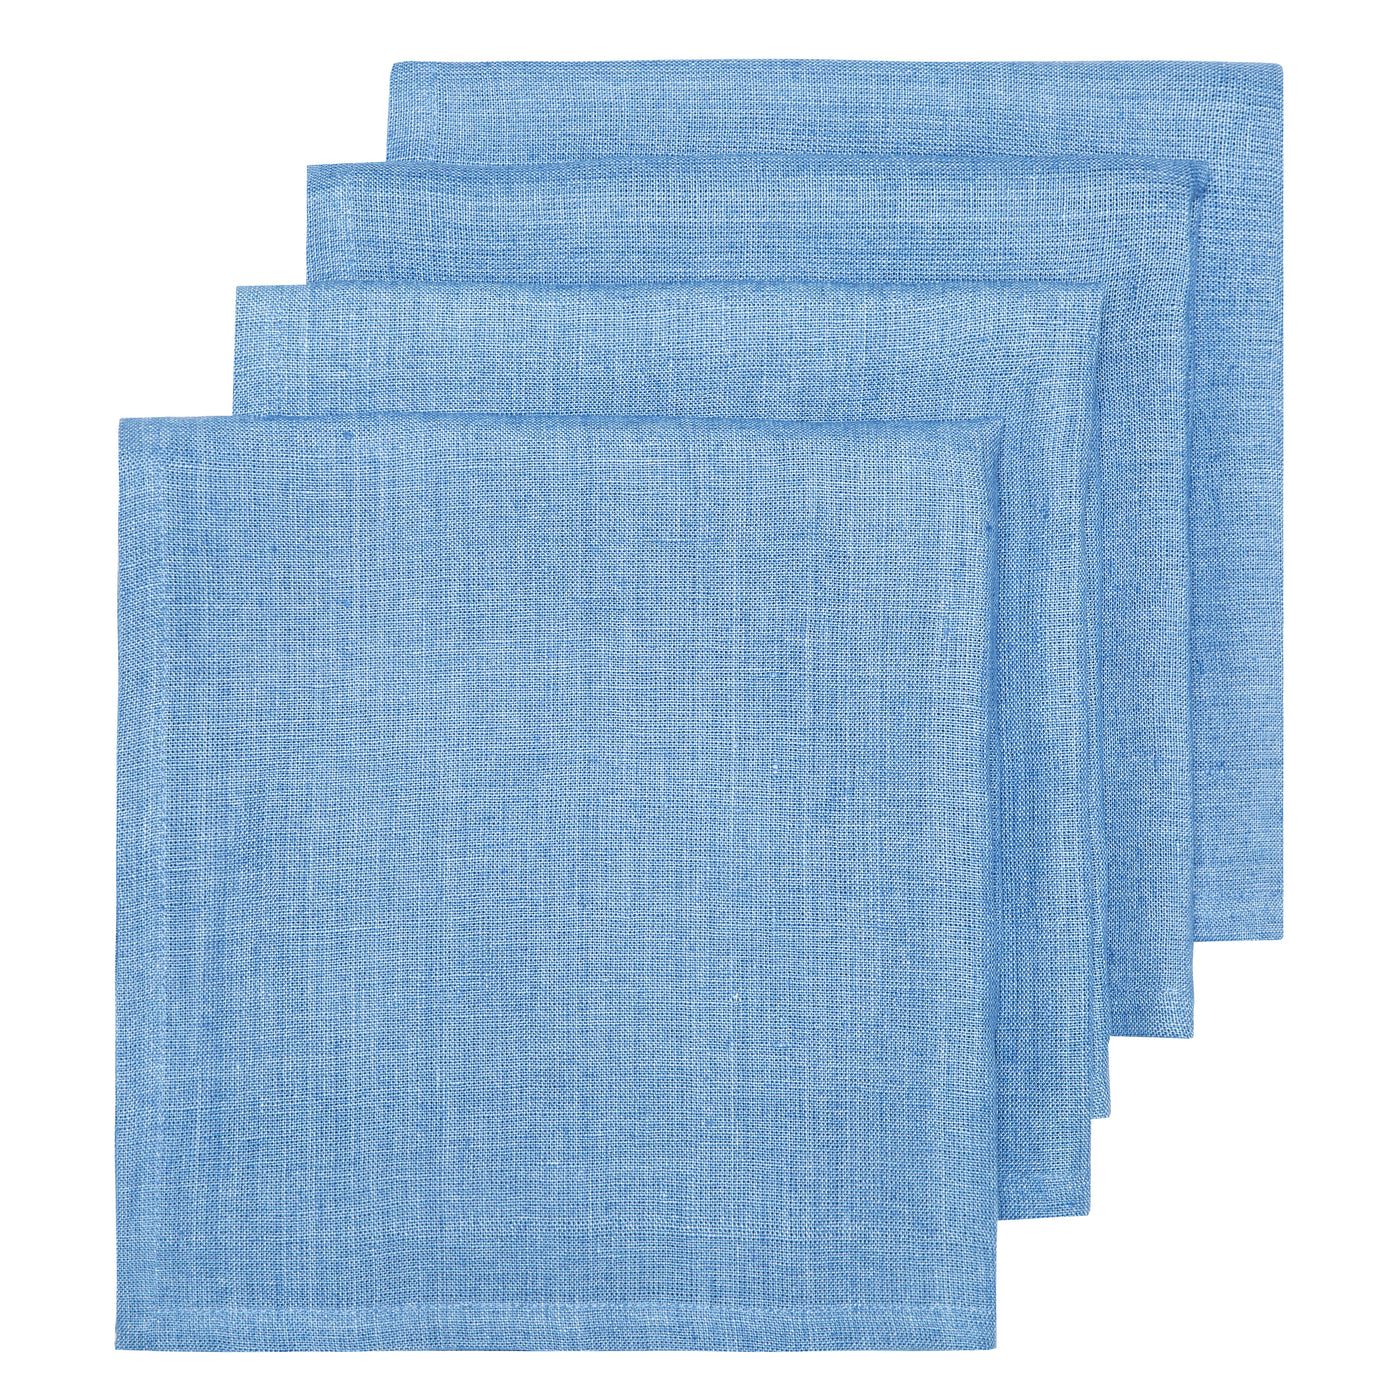 Placemats & Napkins Bundle: Blue Placemats + Cloth Napkins / Set of 4